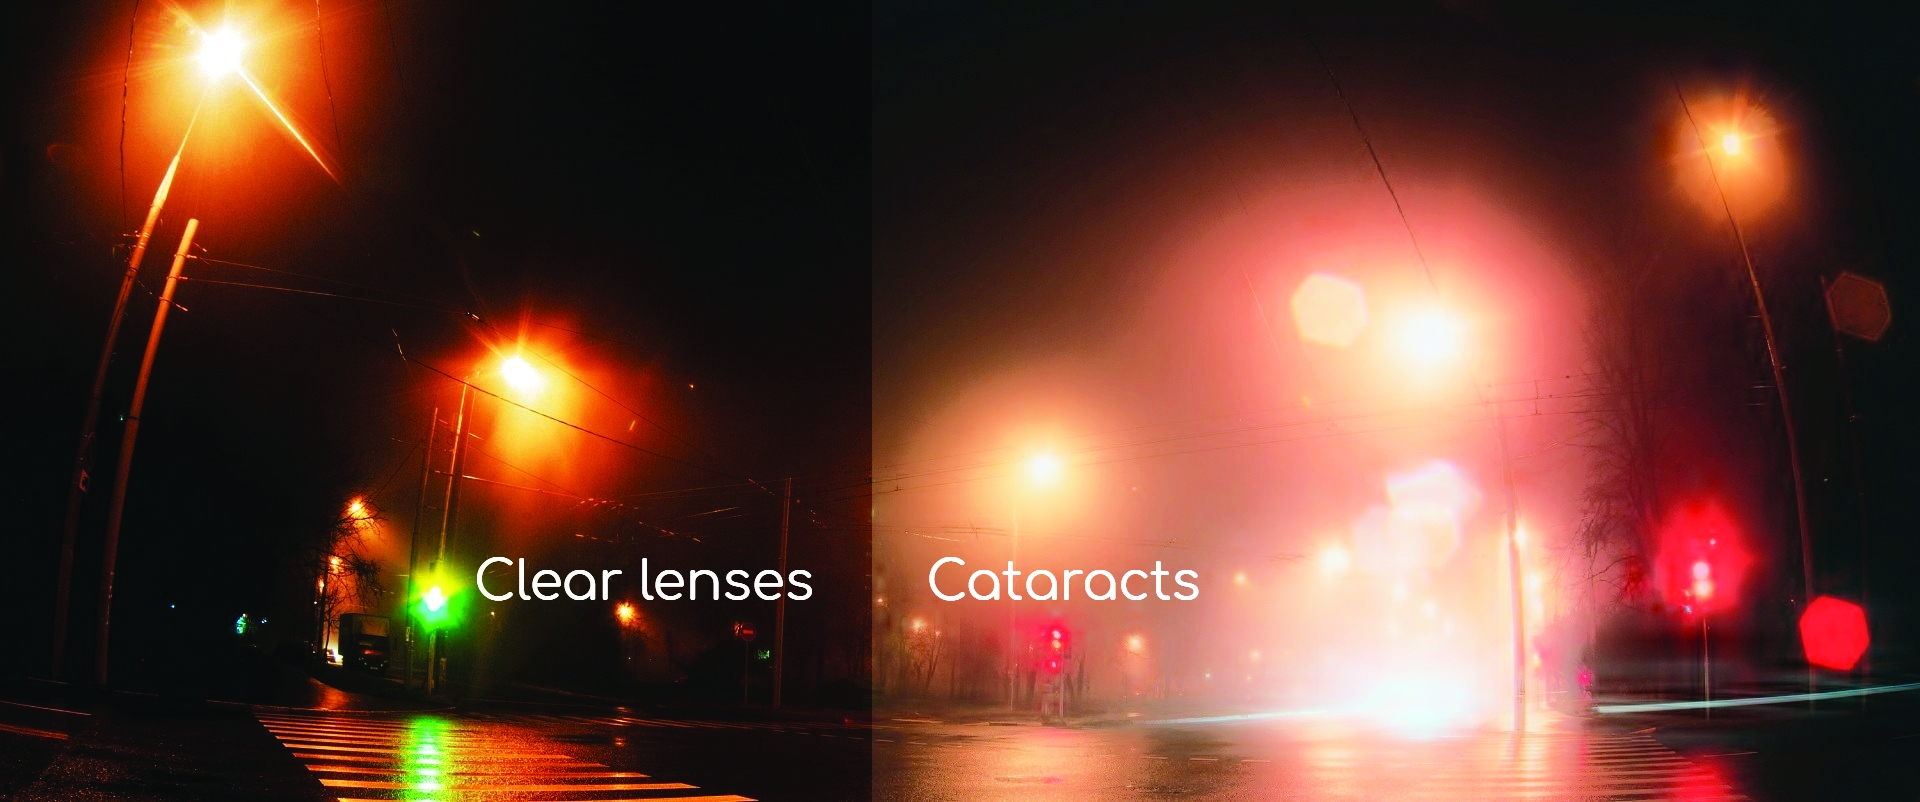 lens clarity comparison